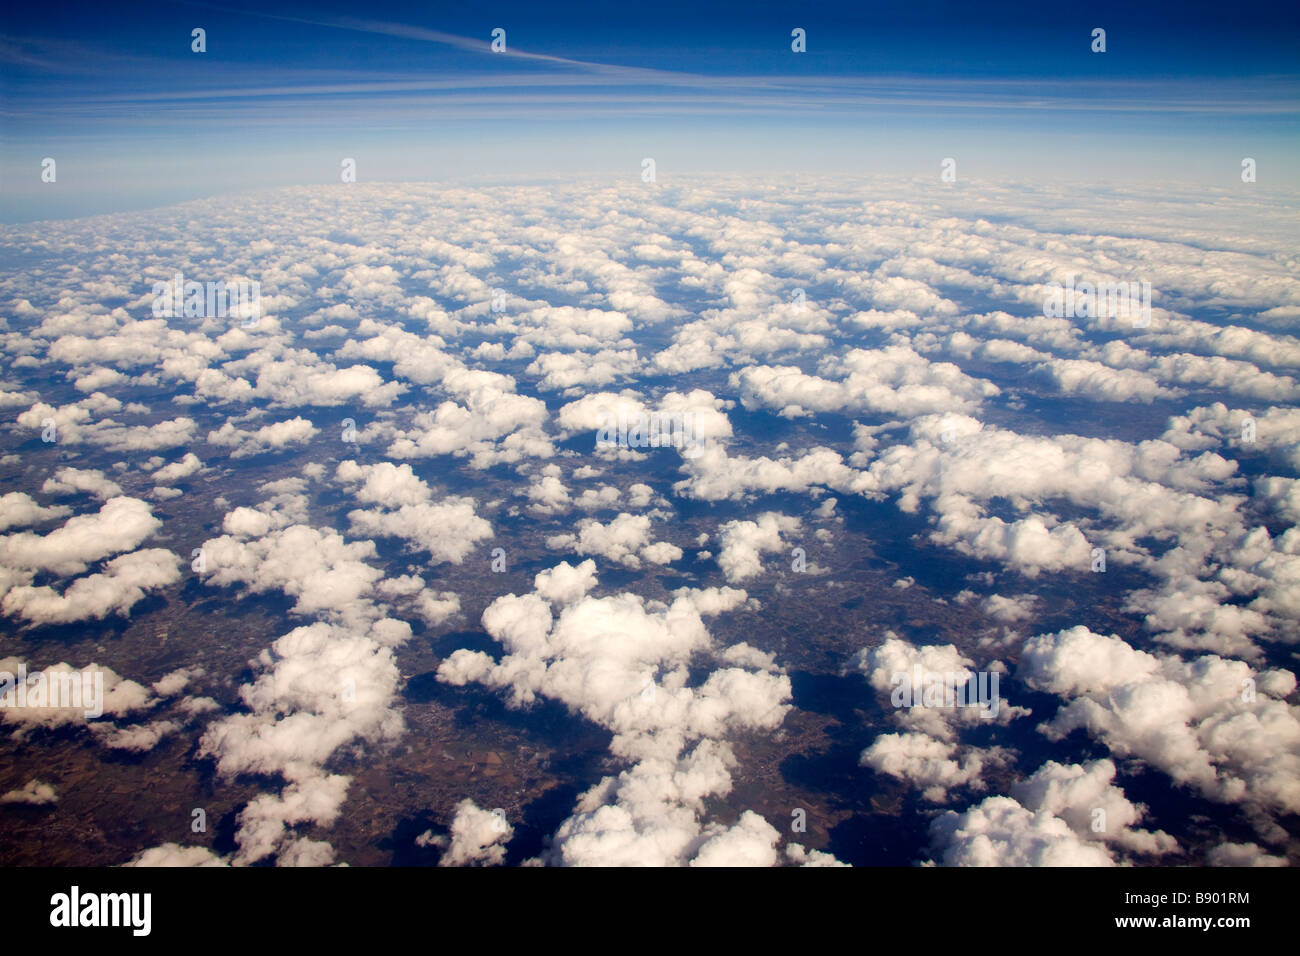 Casse la couverture nuageuse au-dessus du nord de l'Europe vue d'en haut Banque D'Images